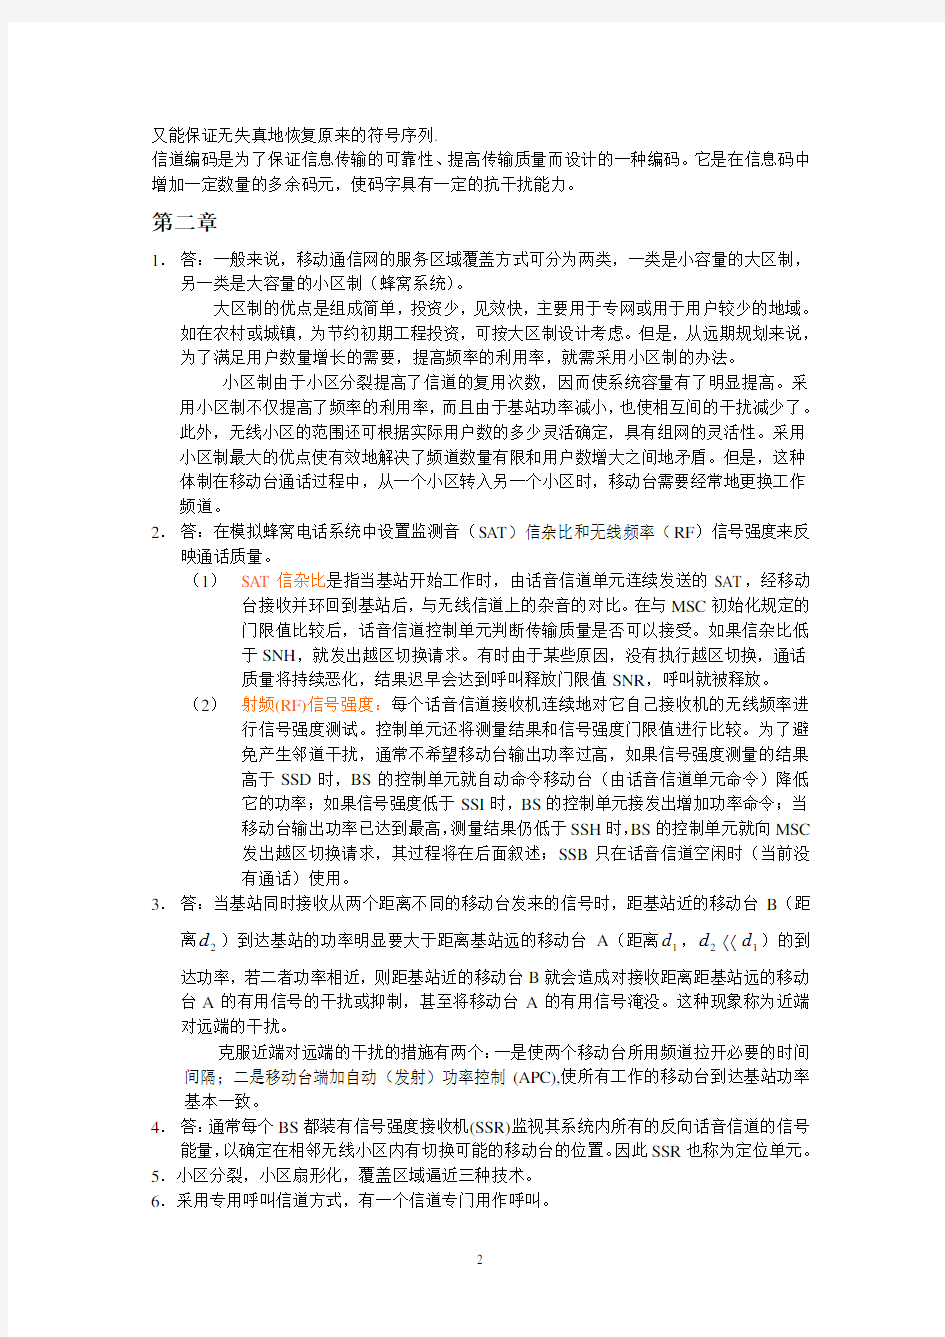 通信工程专业移动通信课后习题答案(章坚武)(2020年7月整理).pdf